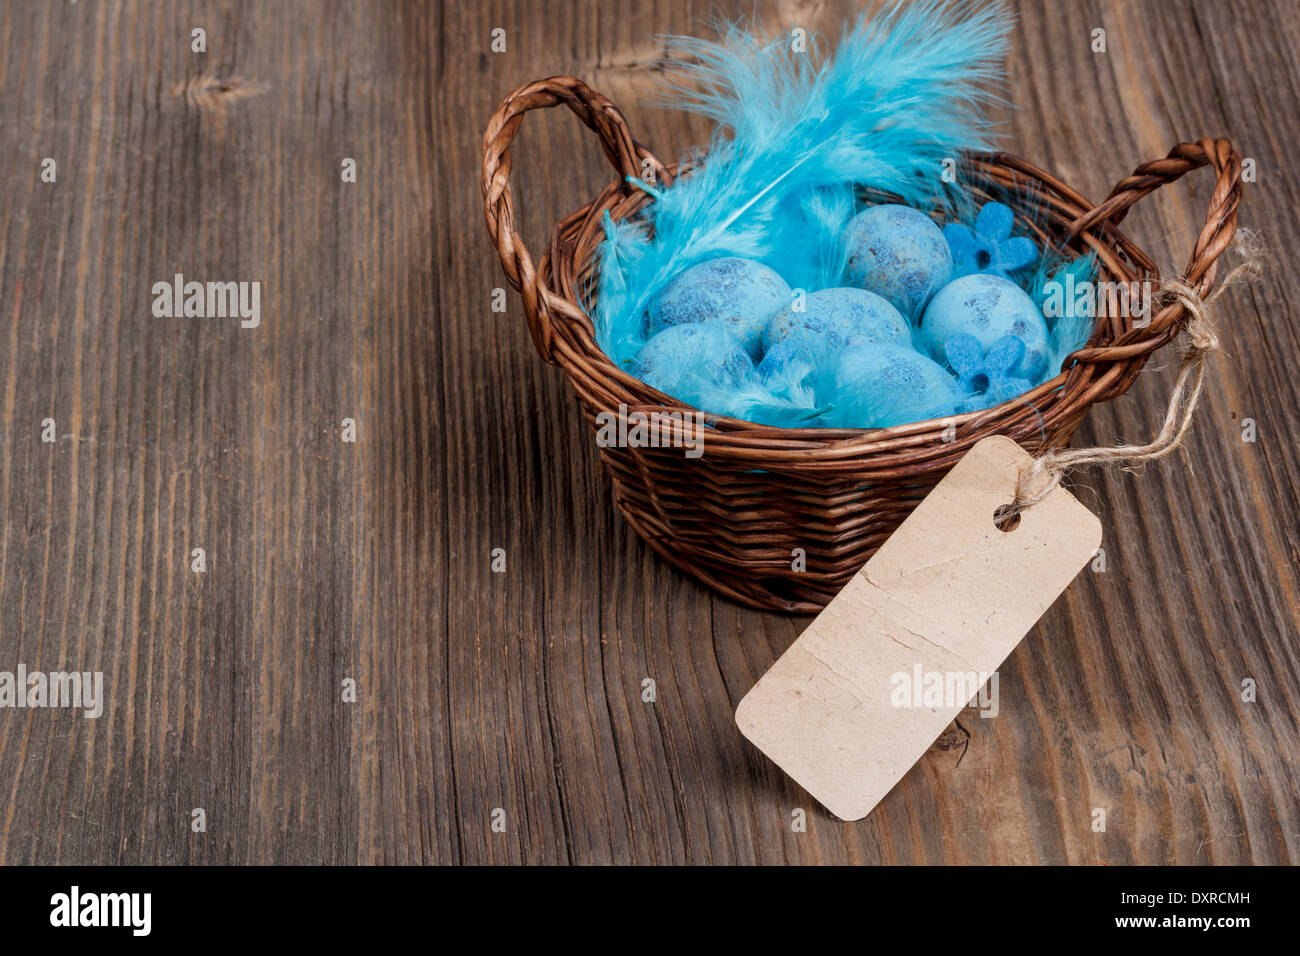 Panier avec des oeufs de caille bleue sur fond de bois Banque D'Images